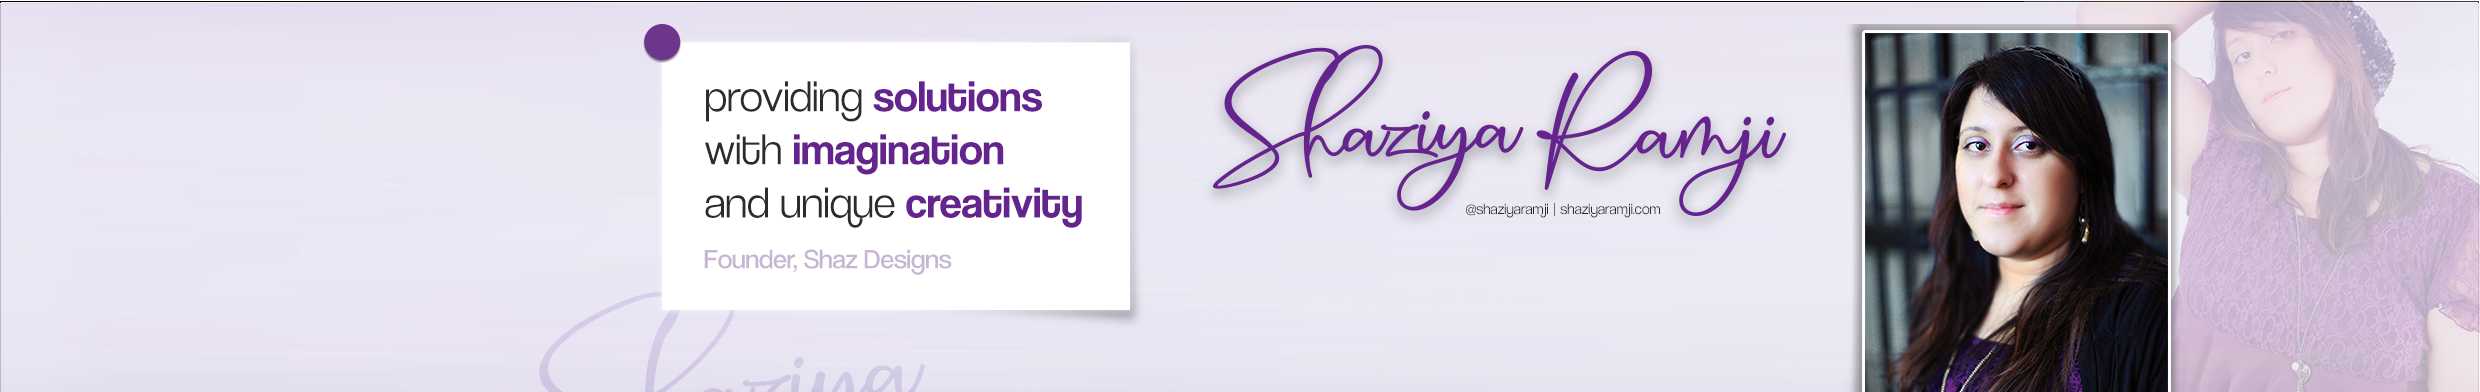 Shaziya Ramji's profile banner